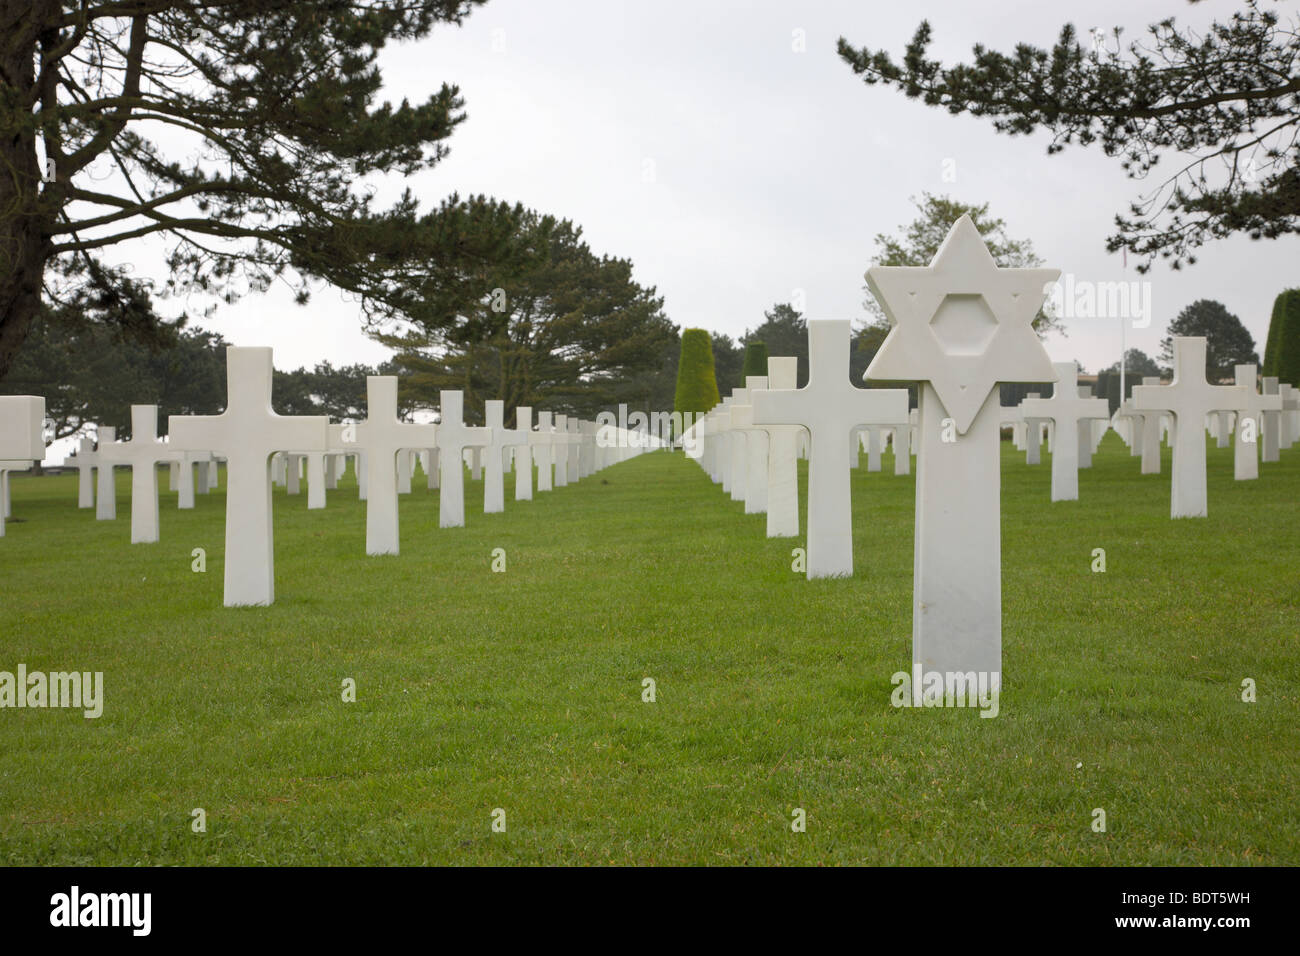 Des croix blanches, étoiles de David et des graves à la Normandy American Cemetery and Memorial à Omaha Beach, Normandie, France, près de Bayeux. Banque D'Images